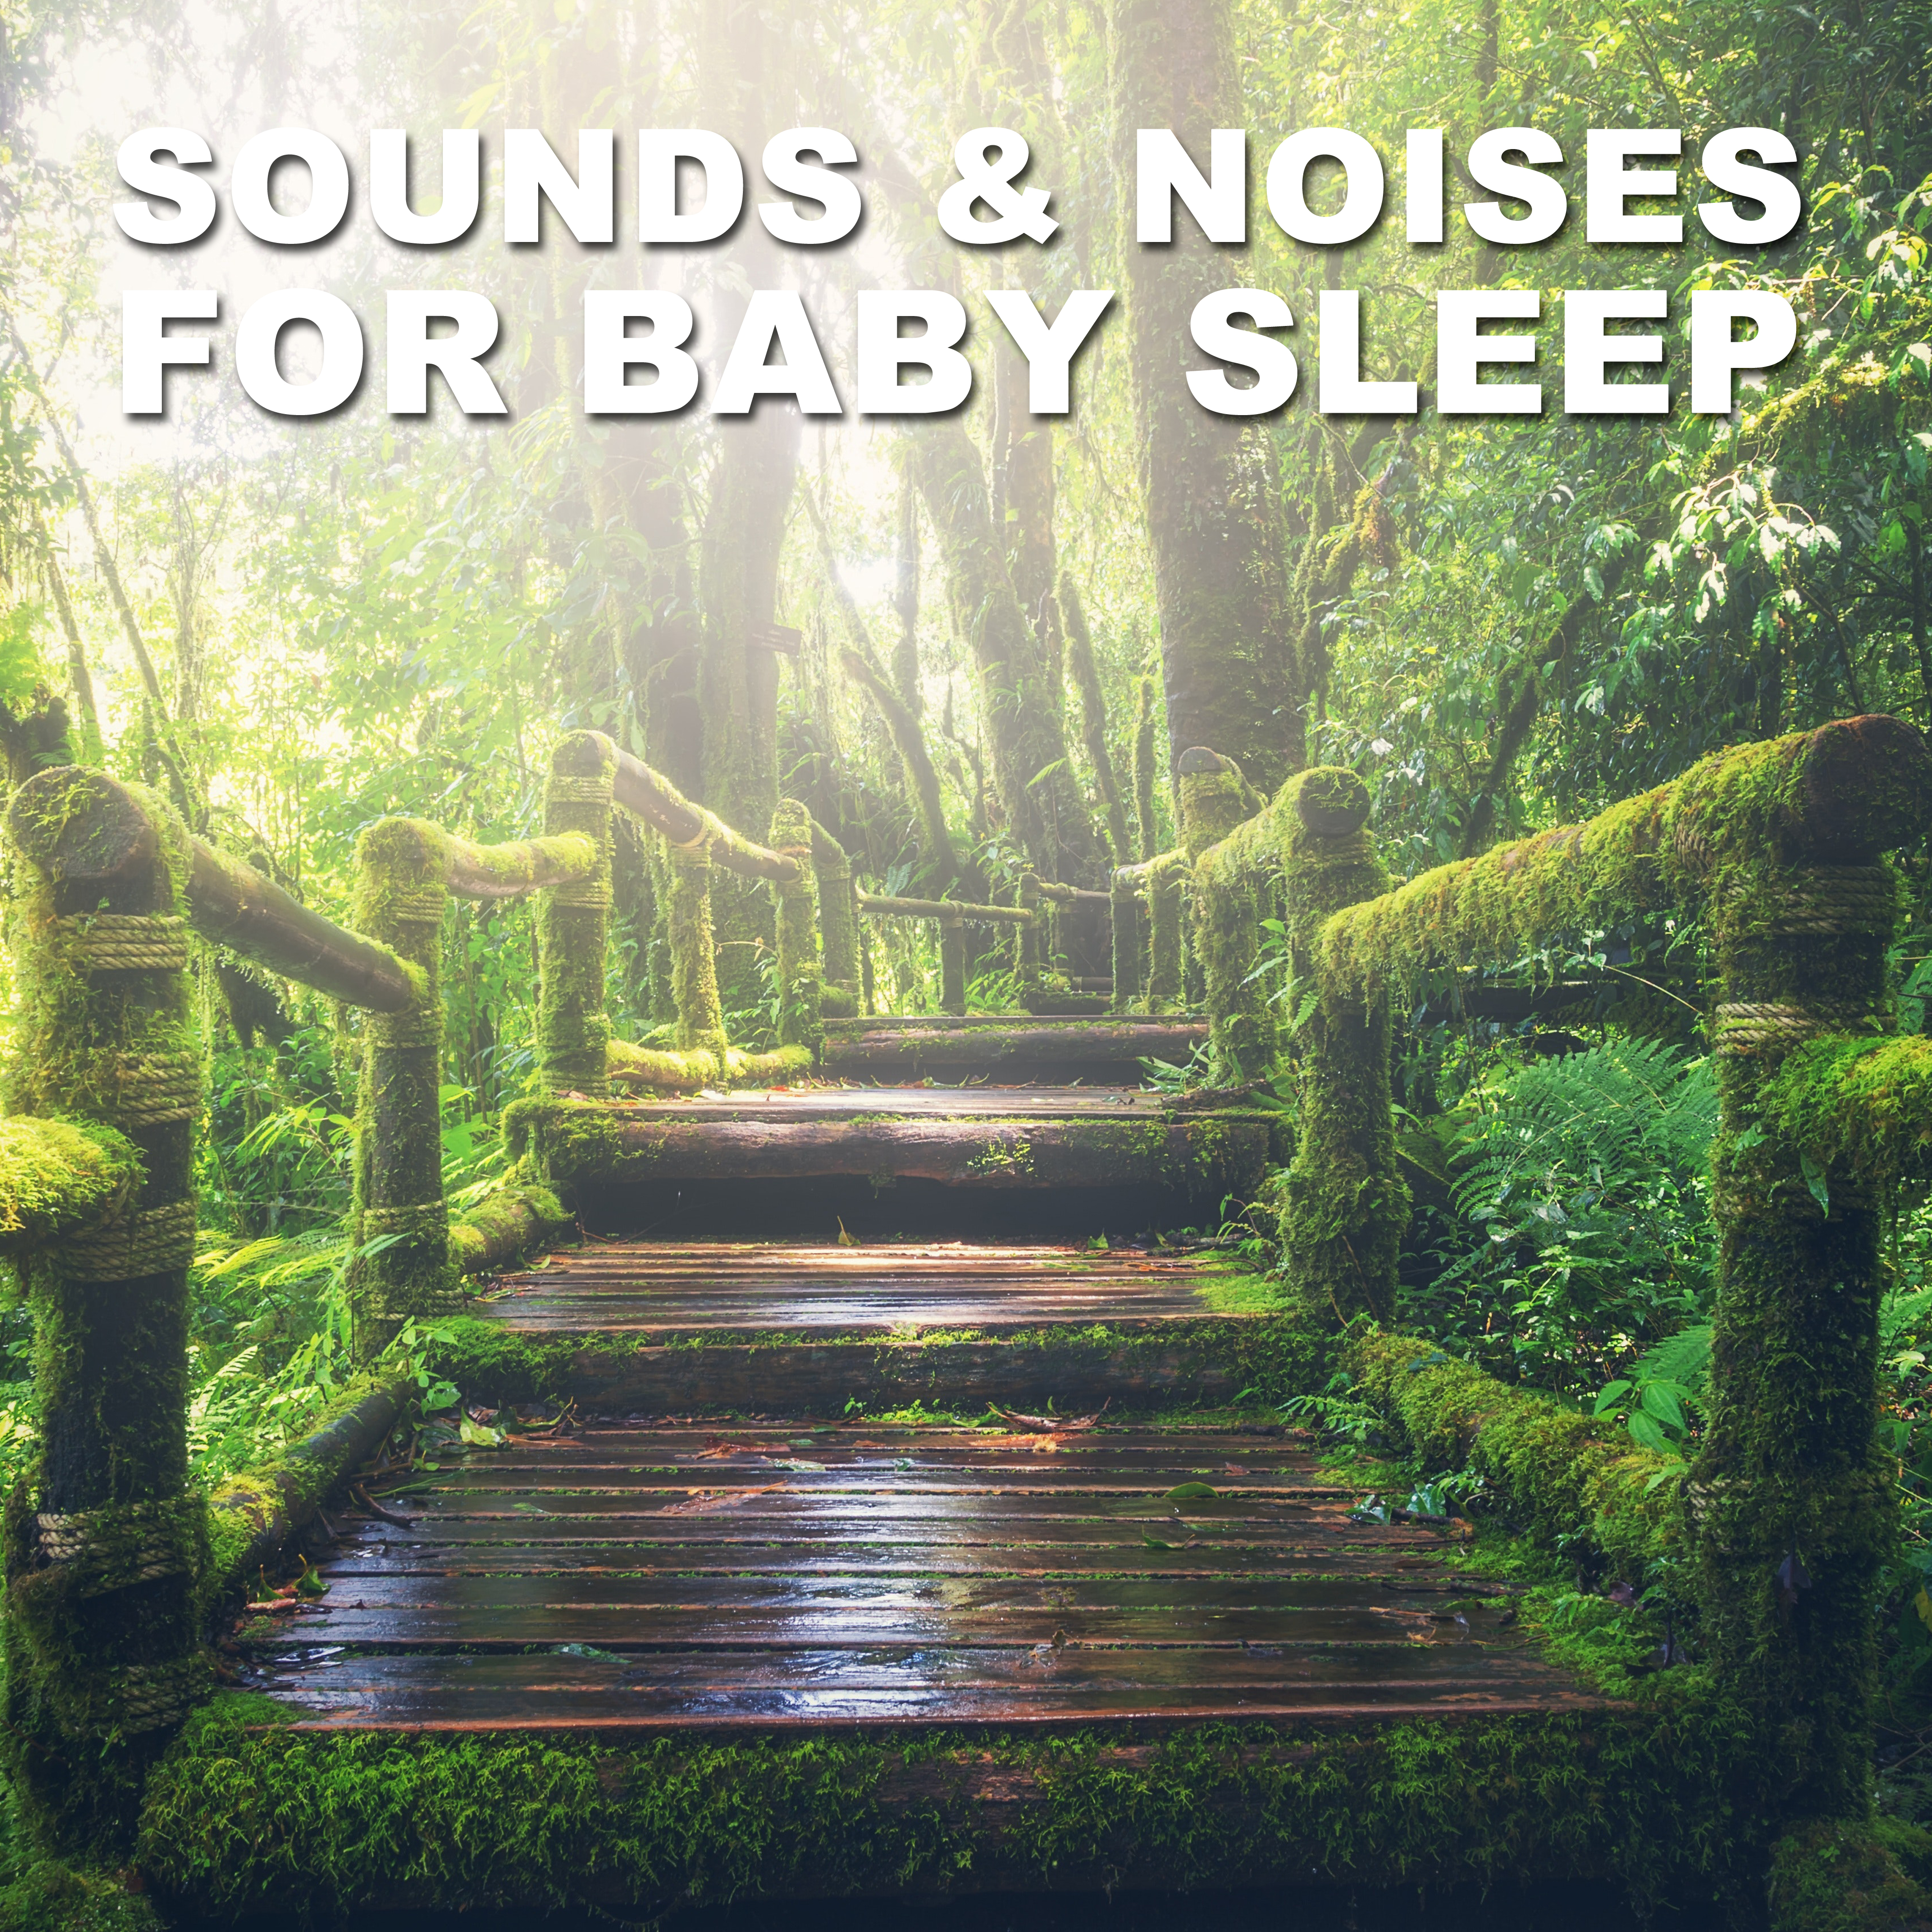 13 Sounds & Noises for Baby Sleep